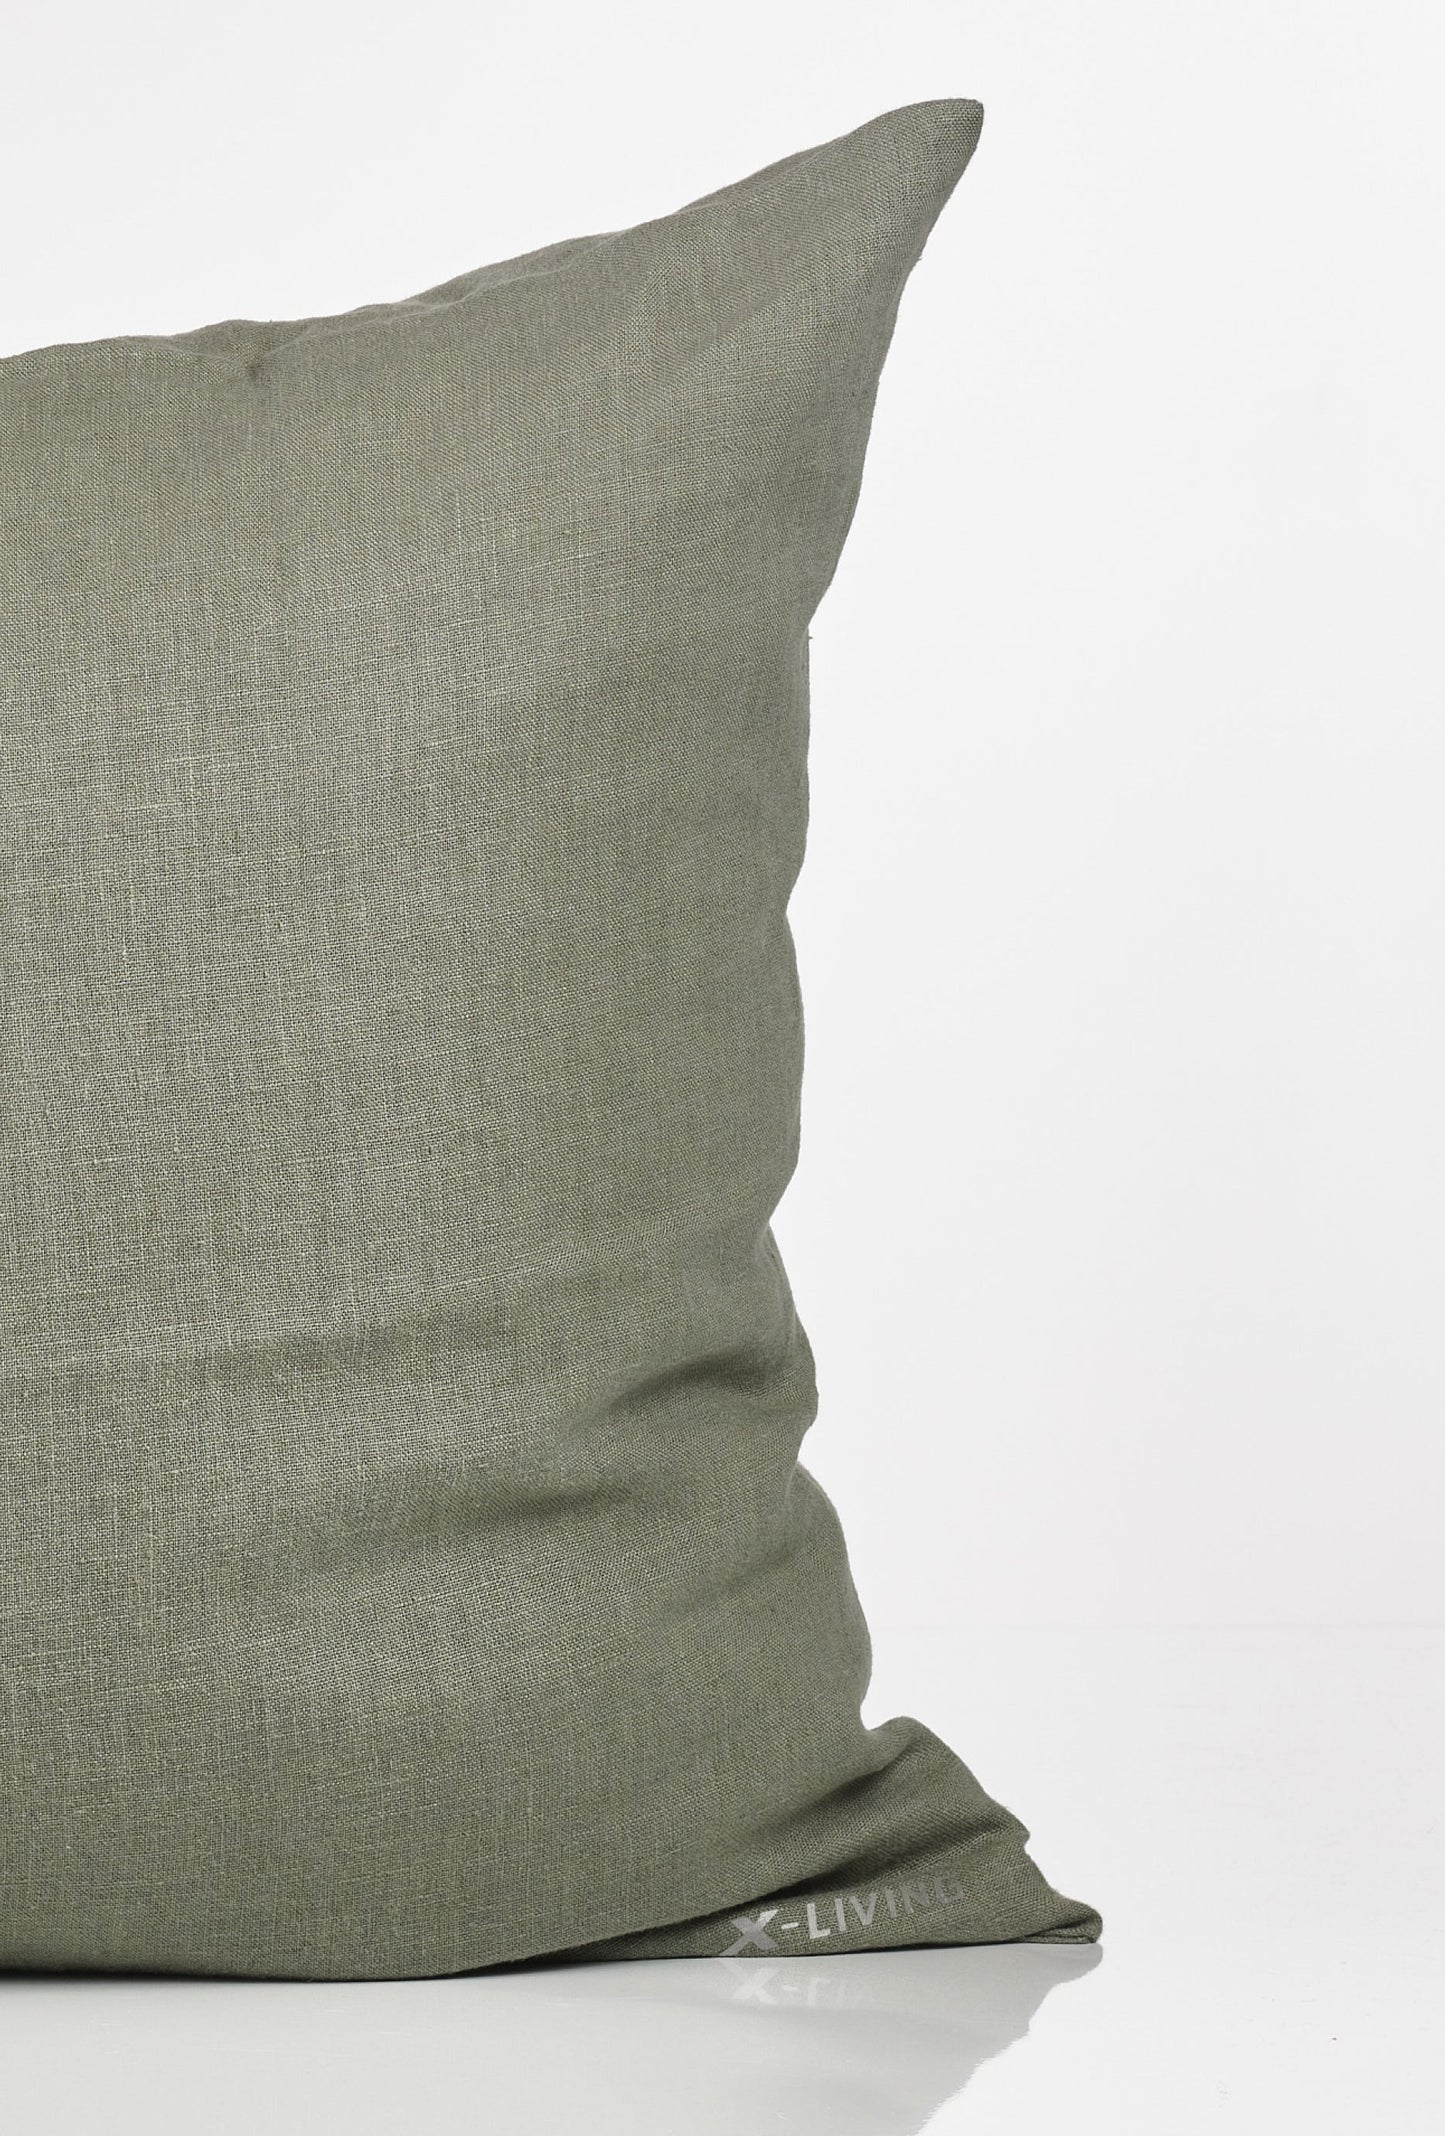 GUSTAV Headboard Fossflake pillow - Dusty Green (50x70)